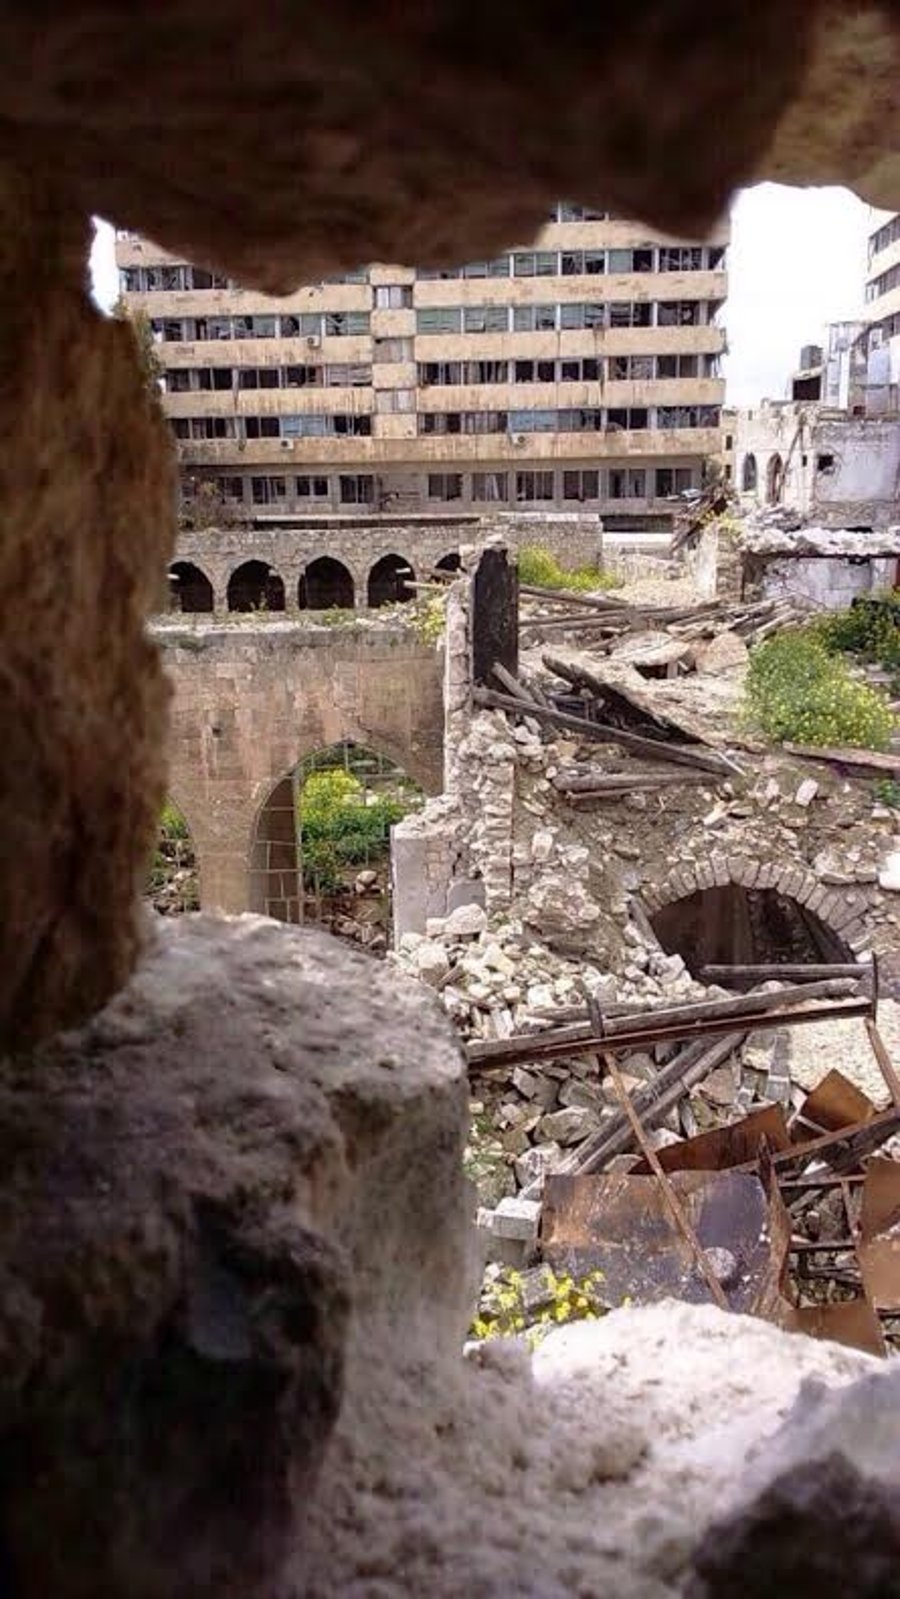 בית הכנסת העתיק בחאלב שבסוריה בסכנת הריסה